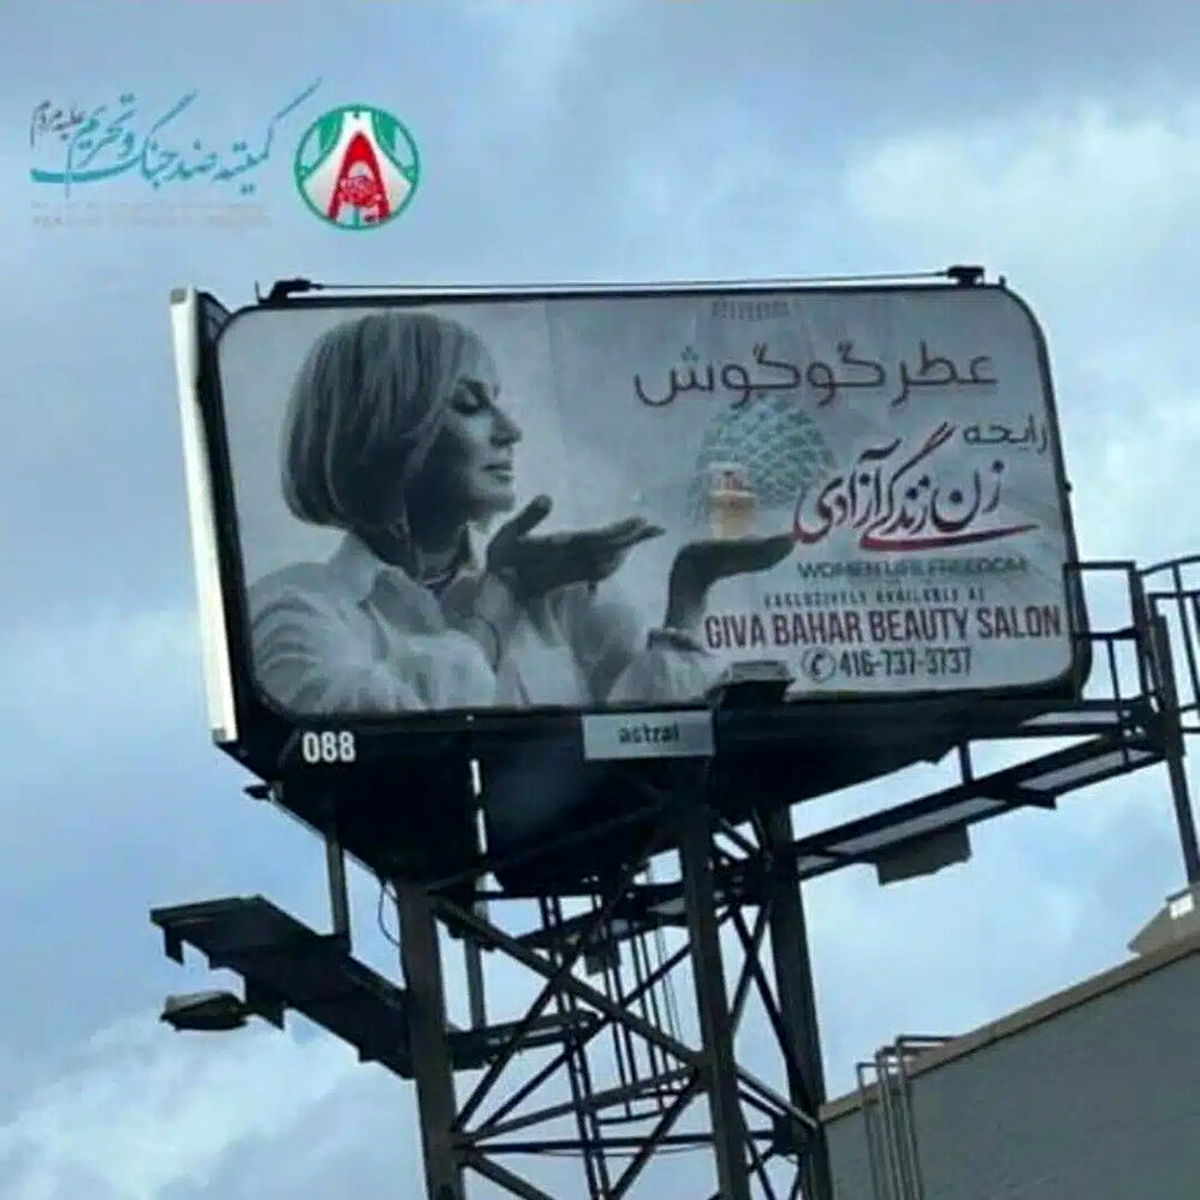 سوءاستفاده گوگوش از شعار «زن زندگی آزادی» با یک بنر تبلیغاتی